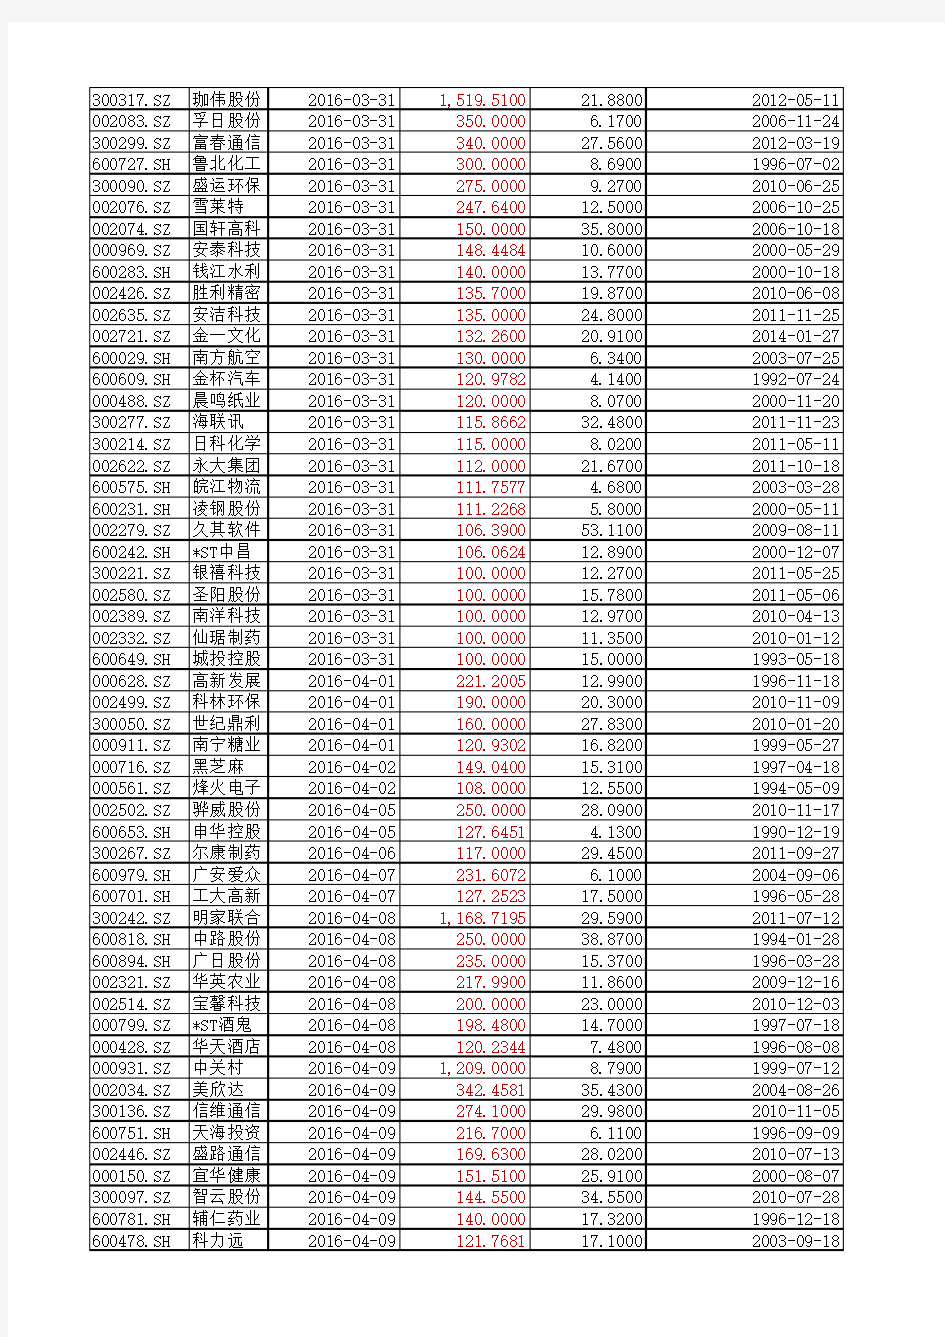 年报行情股票池(未披露年报+业绩预增)